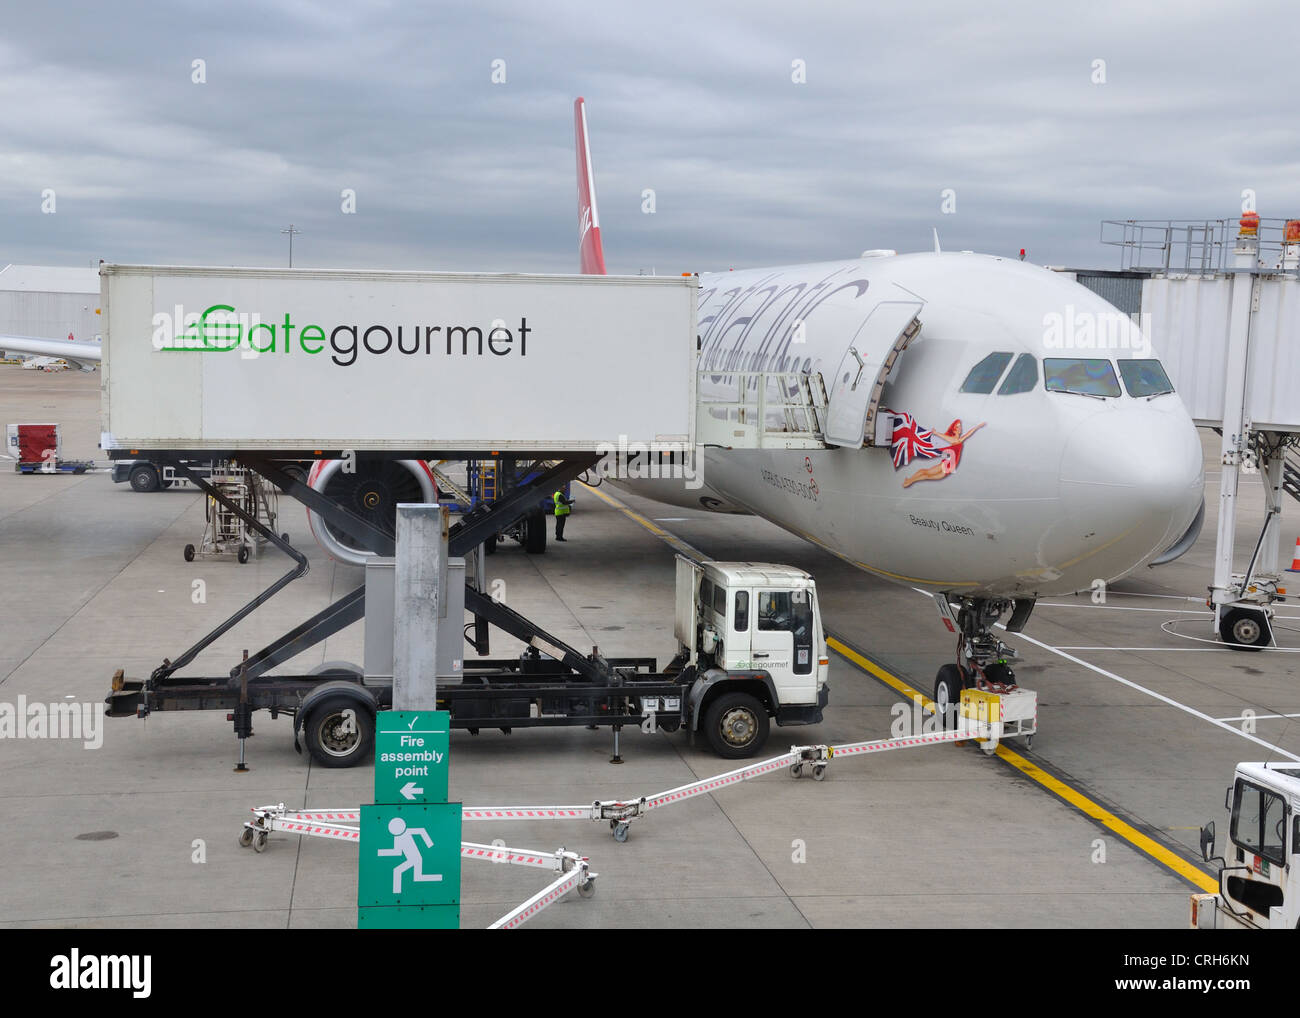 Un Virgin Atlantic aeromobile riceve il servizio da Gate gourmet presso l'aeroporto di Glasgow. Foto Stock